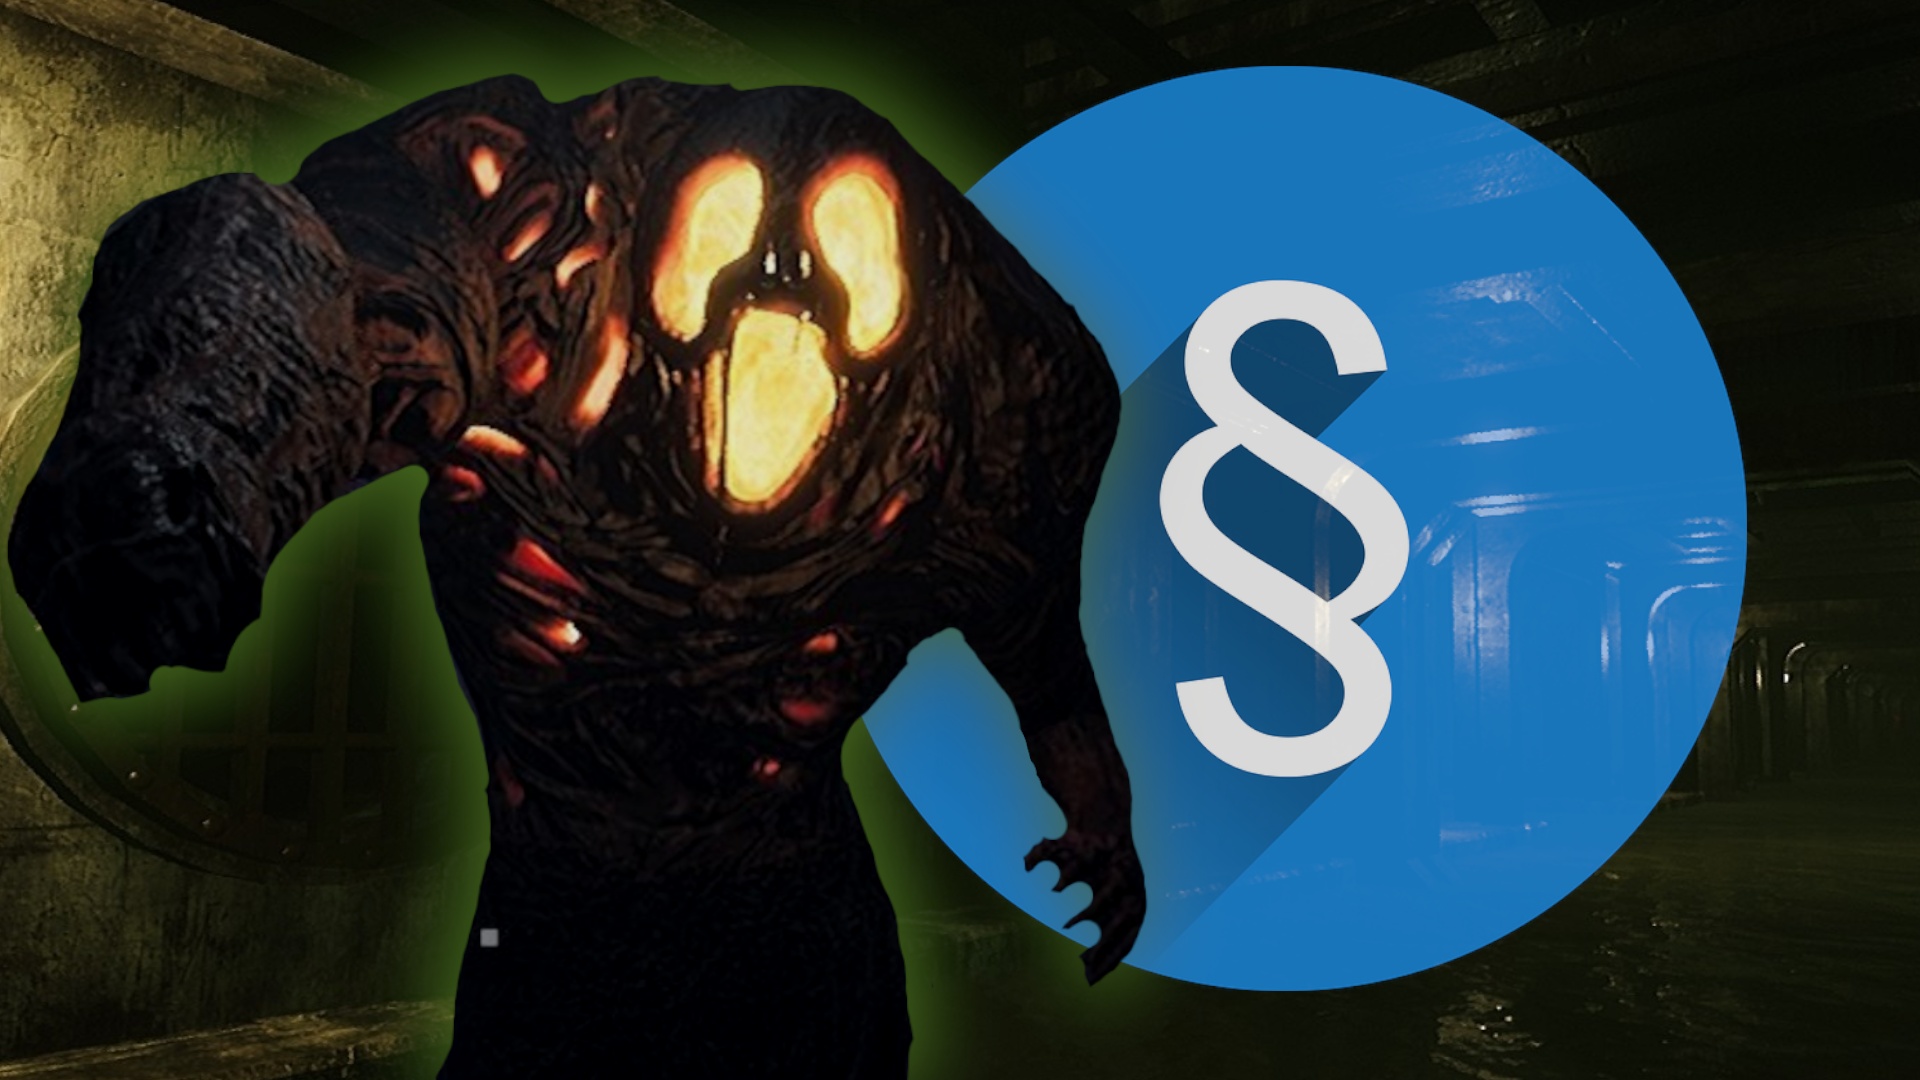 #Monster Energy – Konzern verklagt Indie-Spiel mit "Monster" im Titel, doch der Entwickler geht in die Offensive